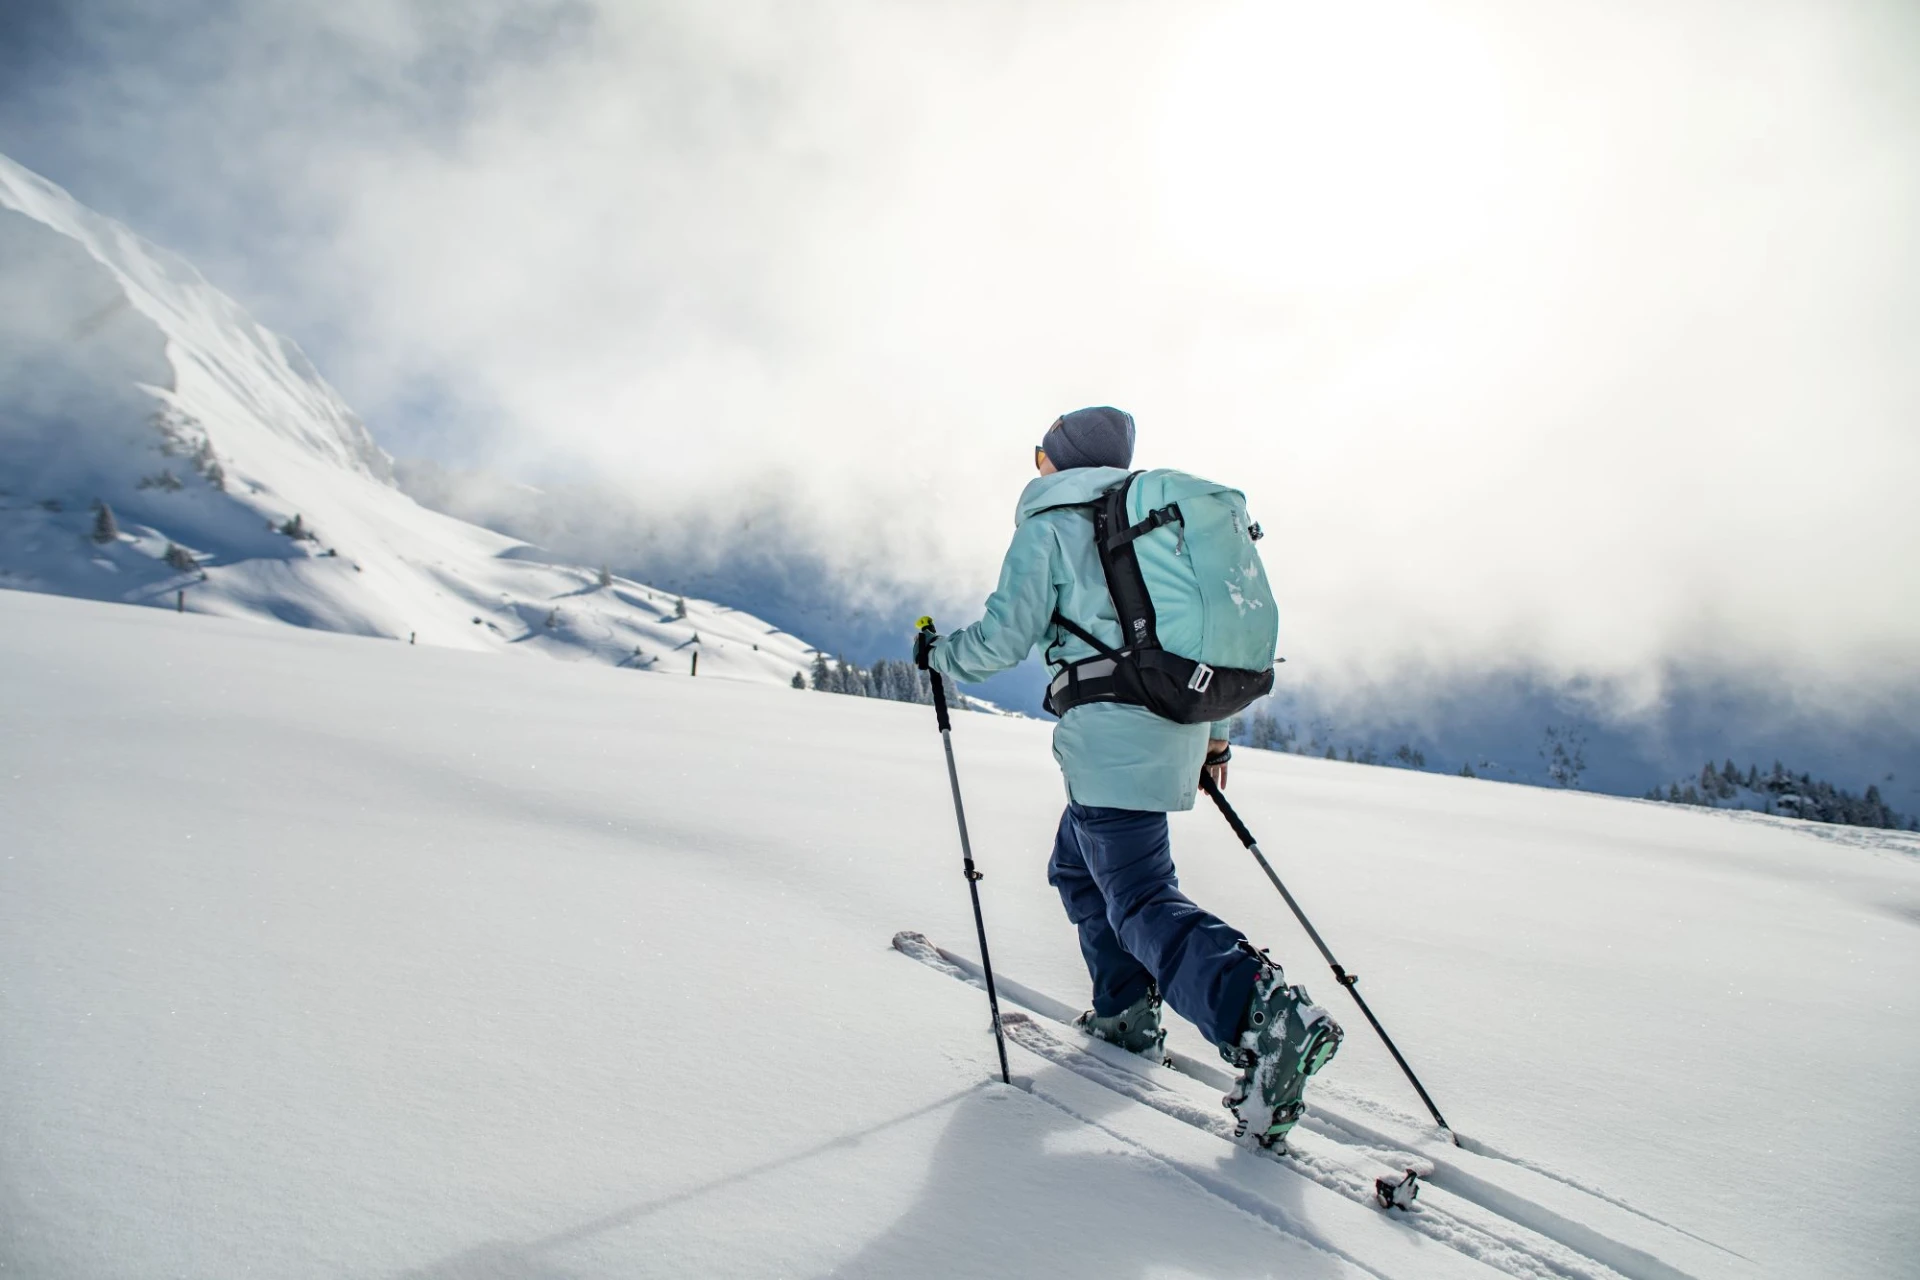 Séjours ski de randonnée en Inde à la décovuerte de l'Himalaya